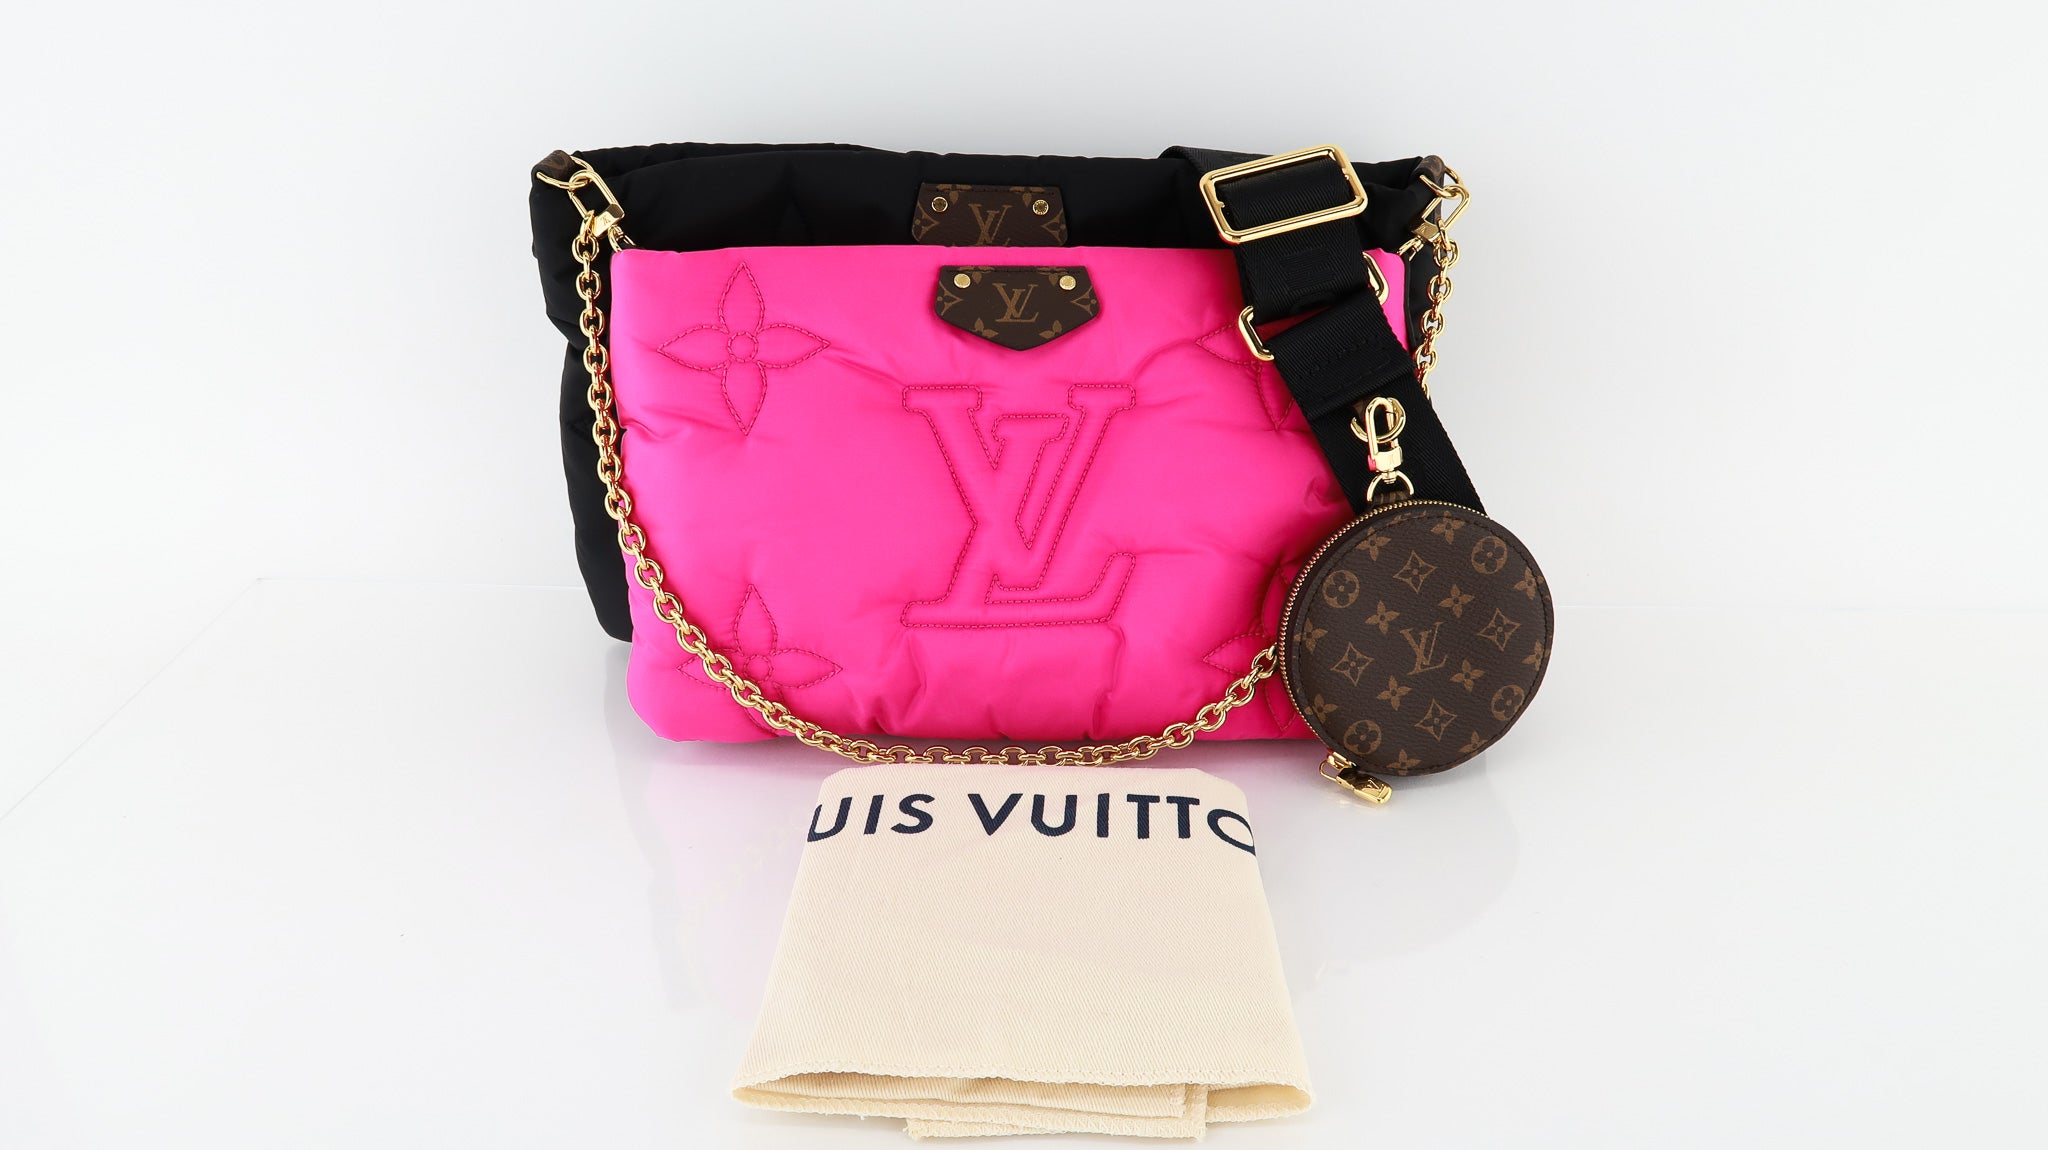 Louis Vuitton, Accessories, Louis Vuitton Paper Bag